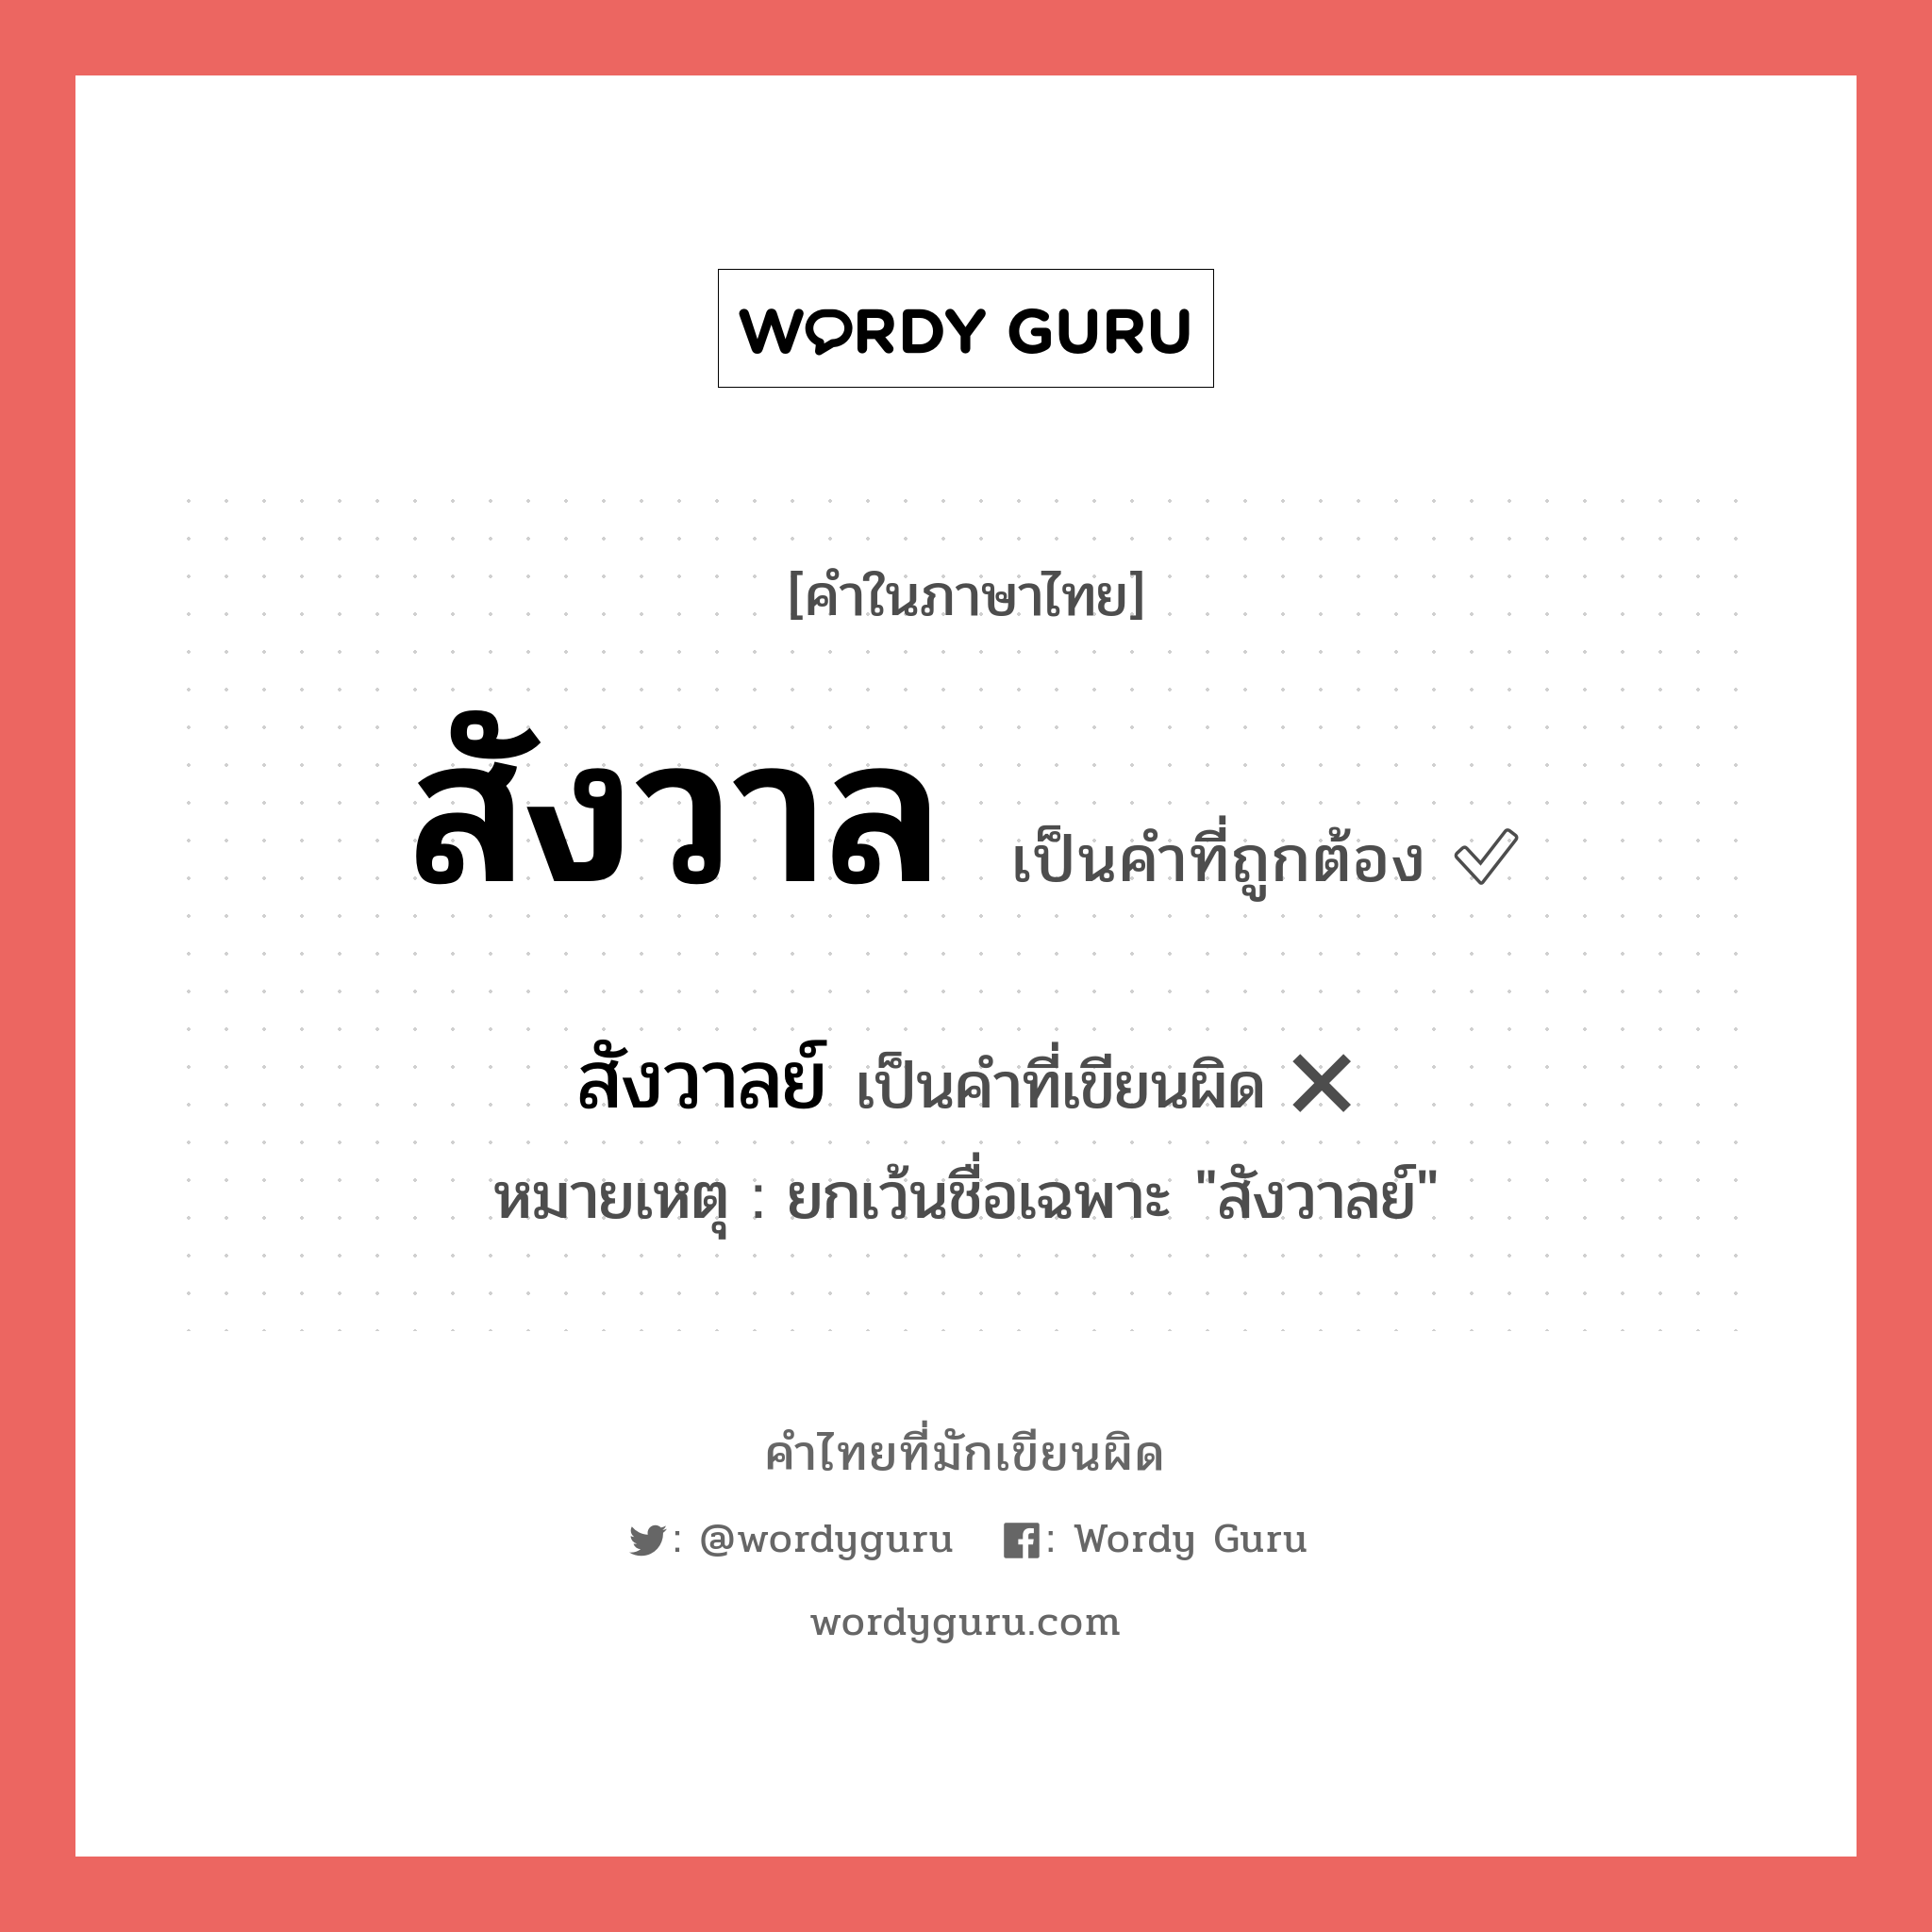 สังวาลย์ หรือ สังวาล คำไหนเขียนถูก?, คำในภาษาไทยที่มักเขียนผิด สังวาลย์ คำที่ผิด ❌ สังวาล หมายเหตุ ยกเว้นชื่อเฉพาะ "สังวาลย์"